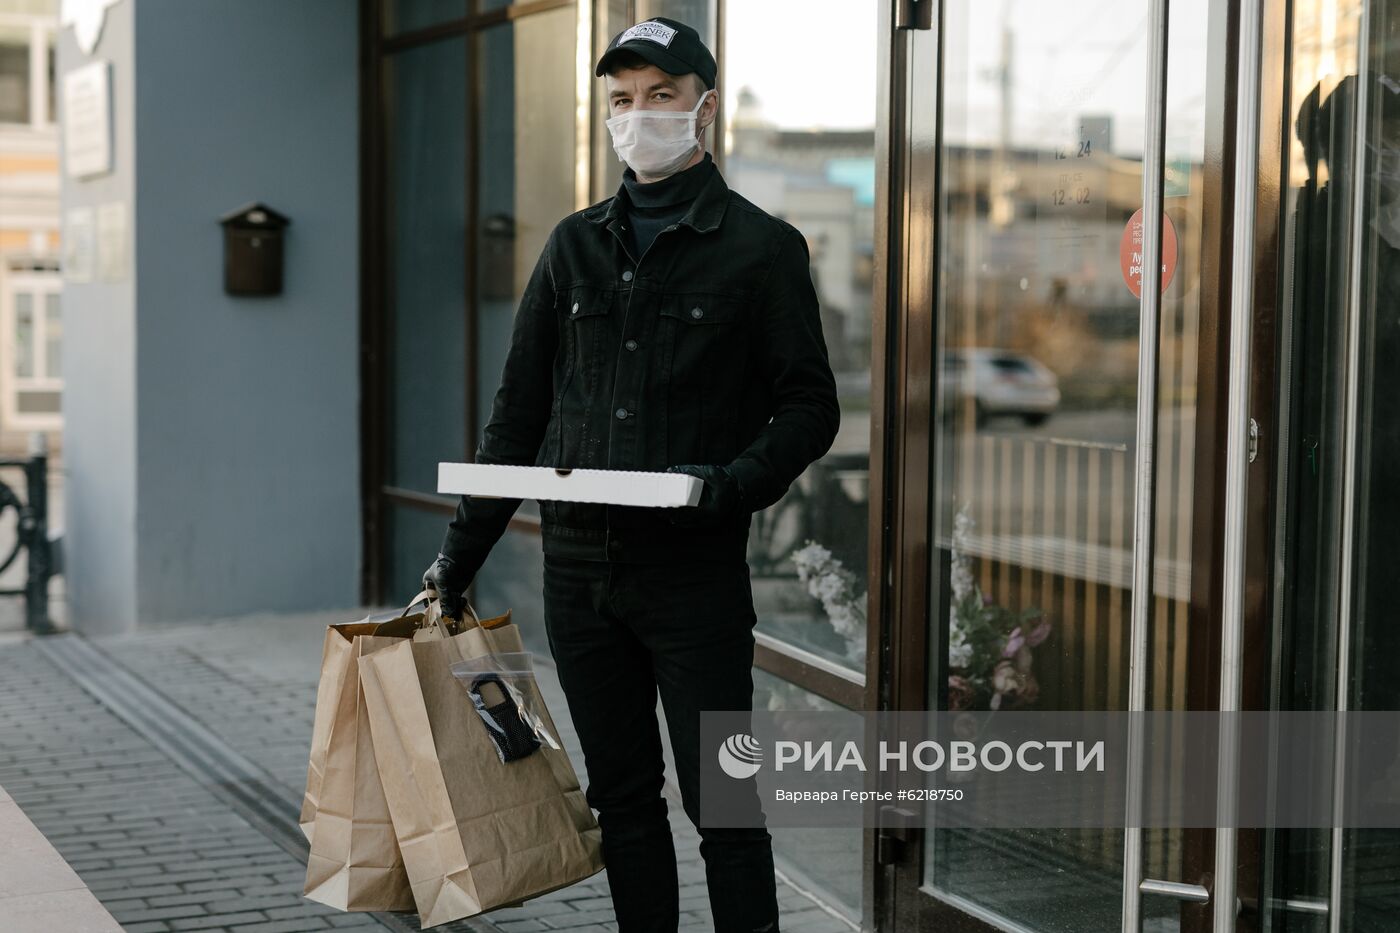 Работа ресторанов в Иванове в условиях пандемии 